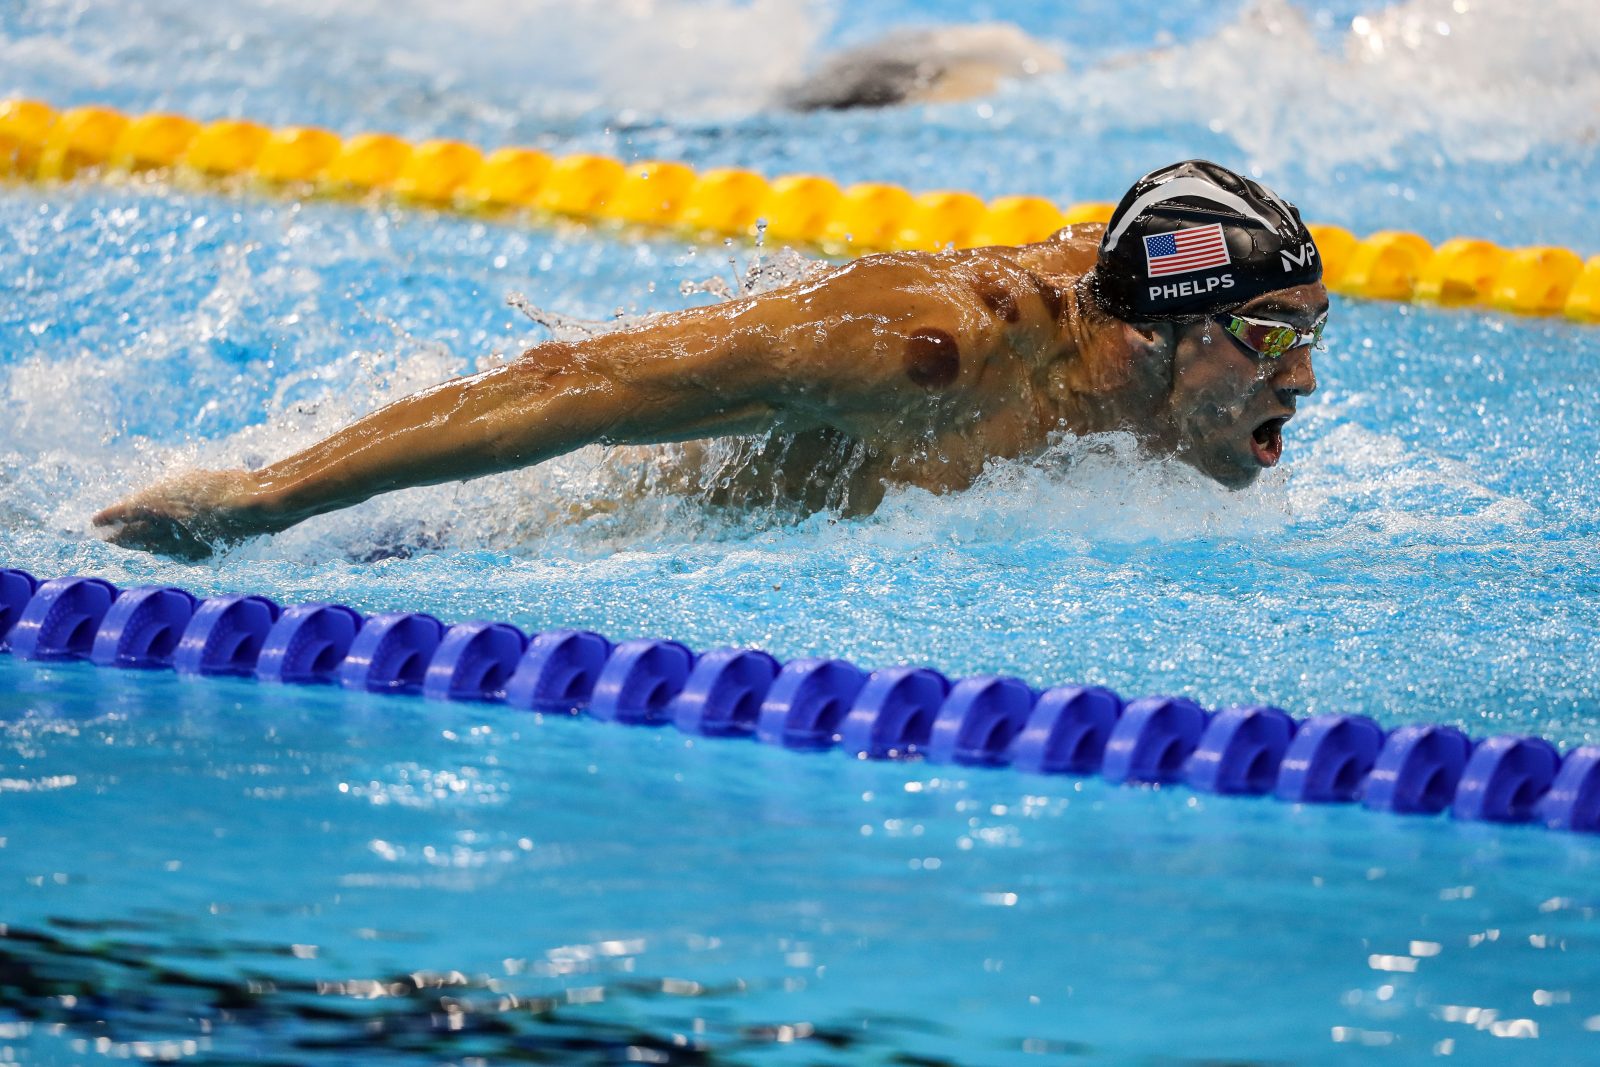 ajbolji plivač svijeta, Amerikanac Michael Phelps (31) povećao je broj olimpijskih zlatnih medalja osvojivši naslove na 200 metara leptir i u štafeti na 4x200 metara slobodno, pa sada ima čak 25 medalja s Olimpijskih igara, od čega 21 zlato. ( Salih Zeki Fazlıoğlu - Anadolu Agency )